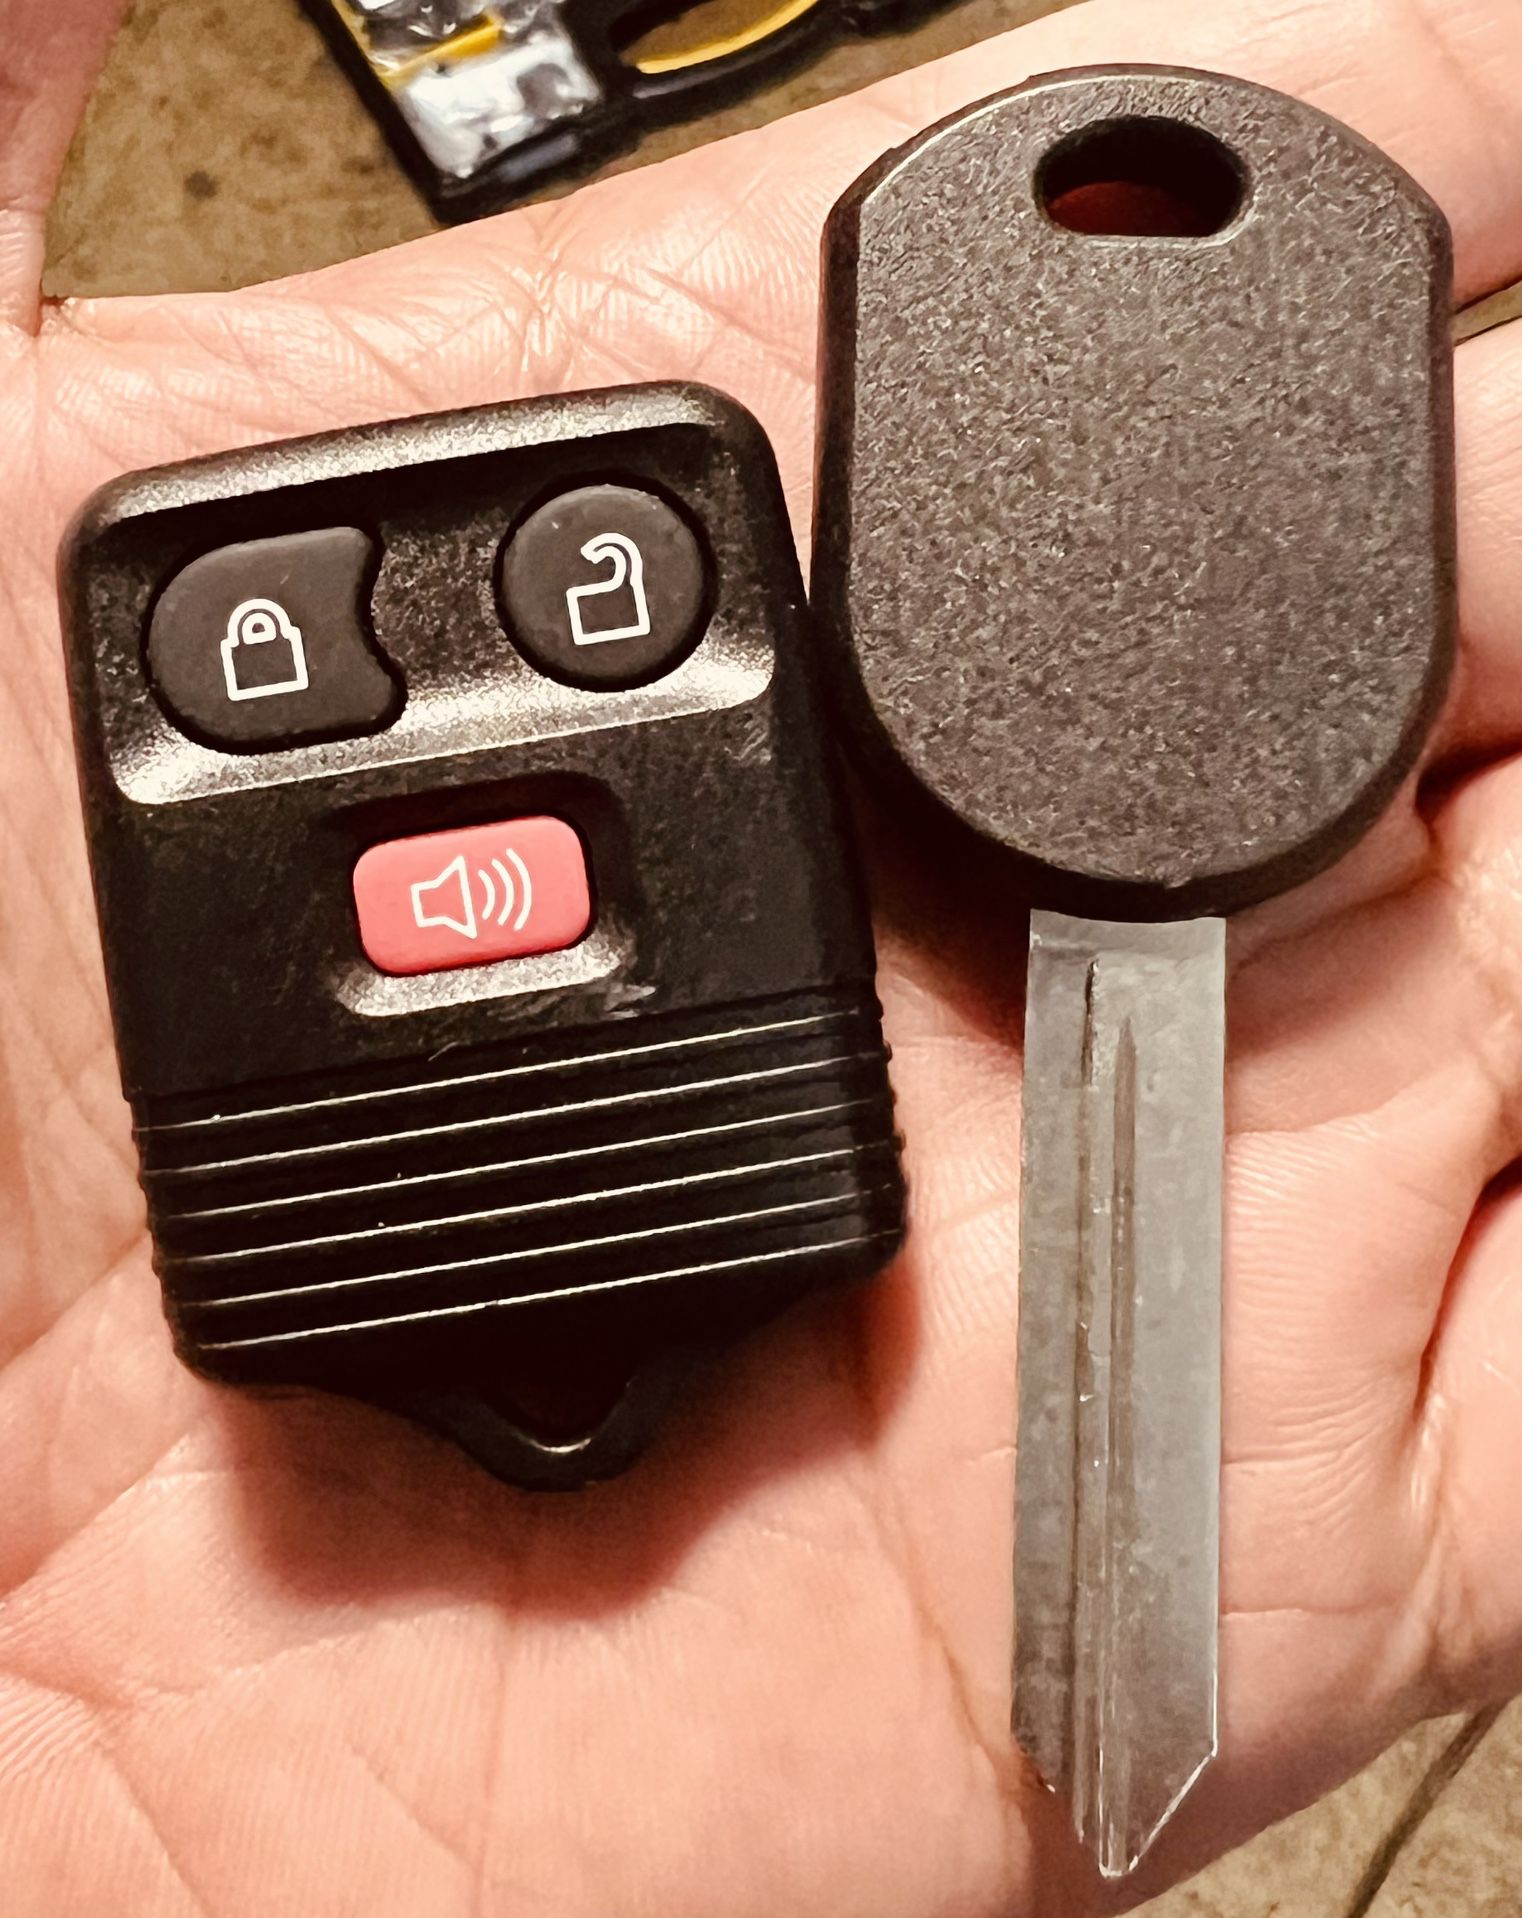 [$100 In Upland Tonight] Ford Lincoln Mercury Mazda Key & Remote Copy (Explorer, Edge, Escape, Expedition, F-150, F-250, F-350, Navigator & more)